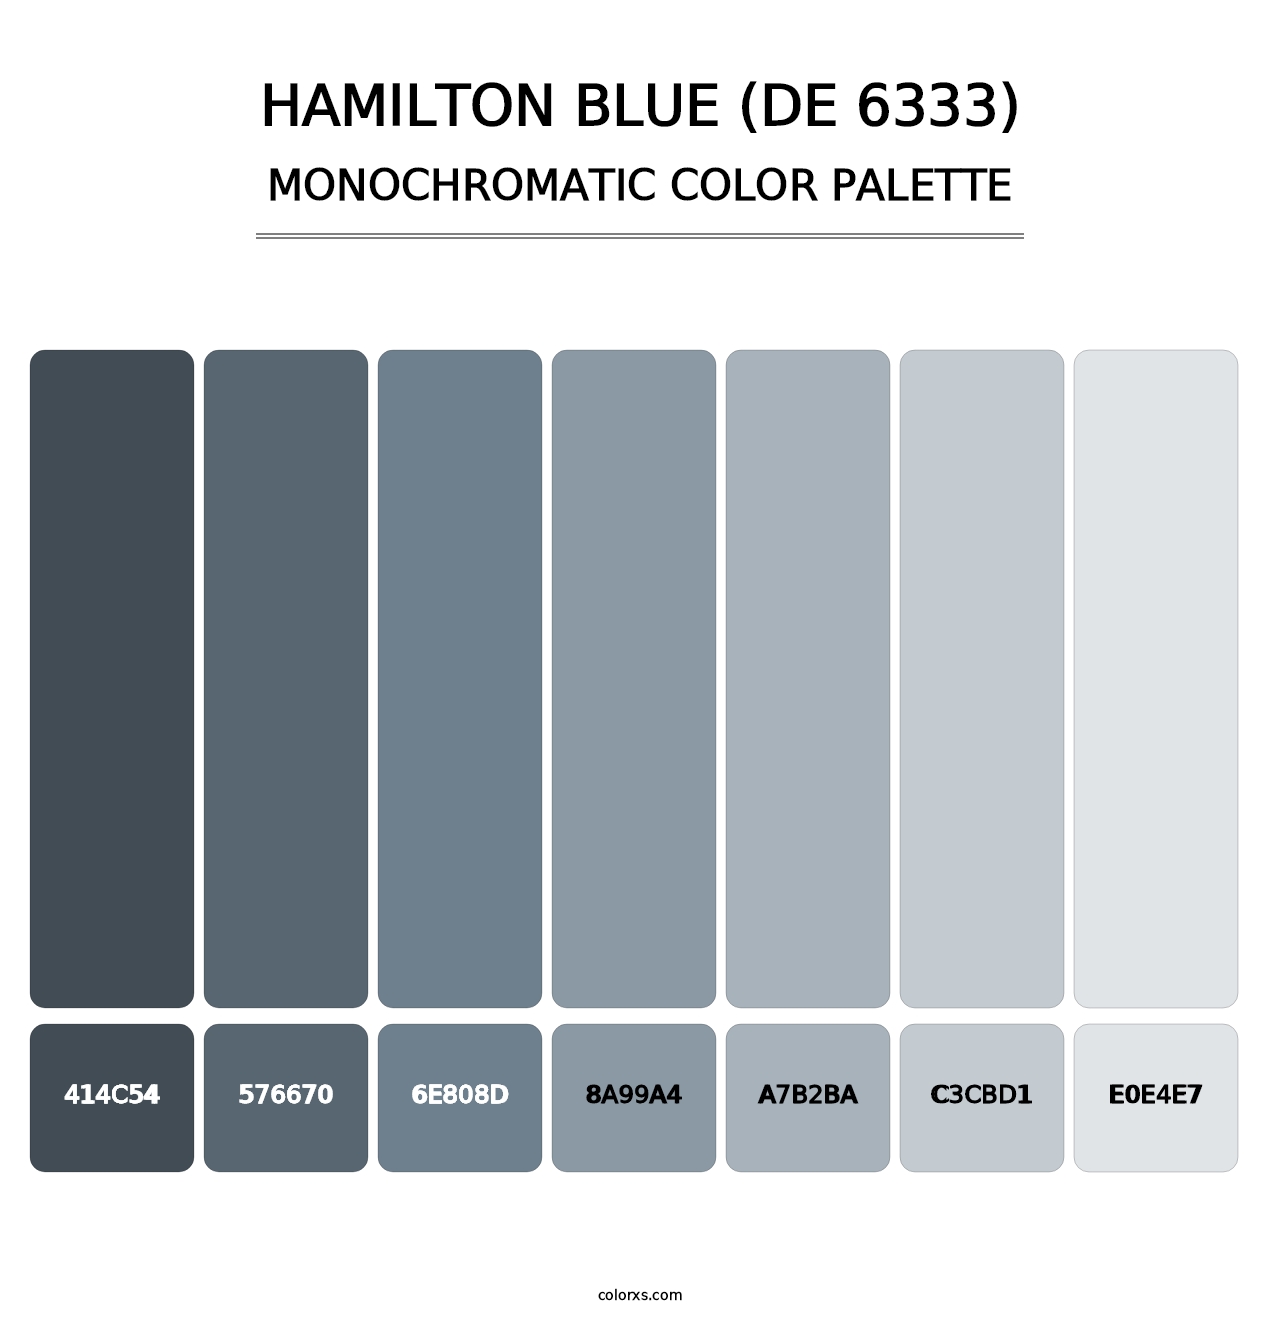 Hamilton Blue (DE 6333) - Monochromatic Color Palette